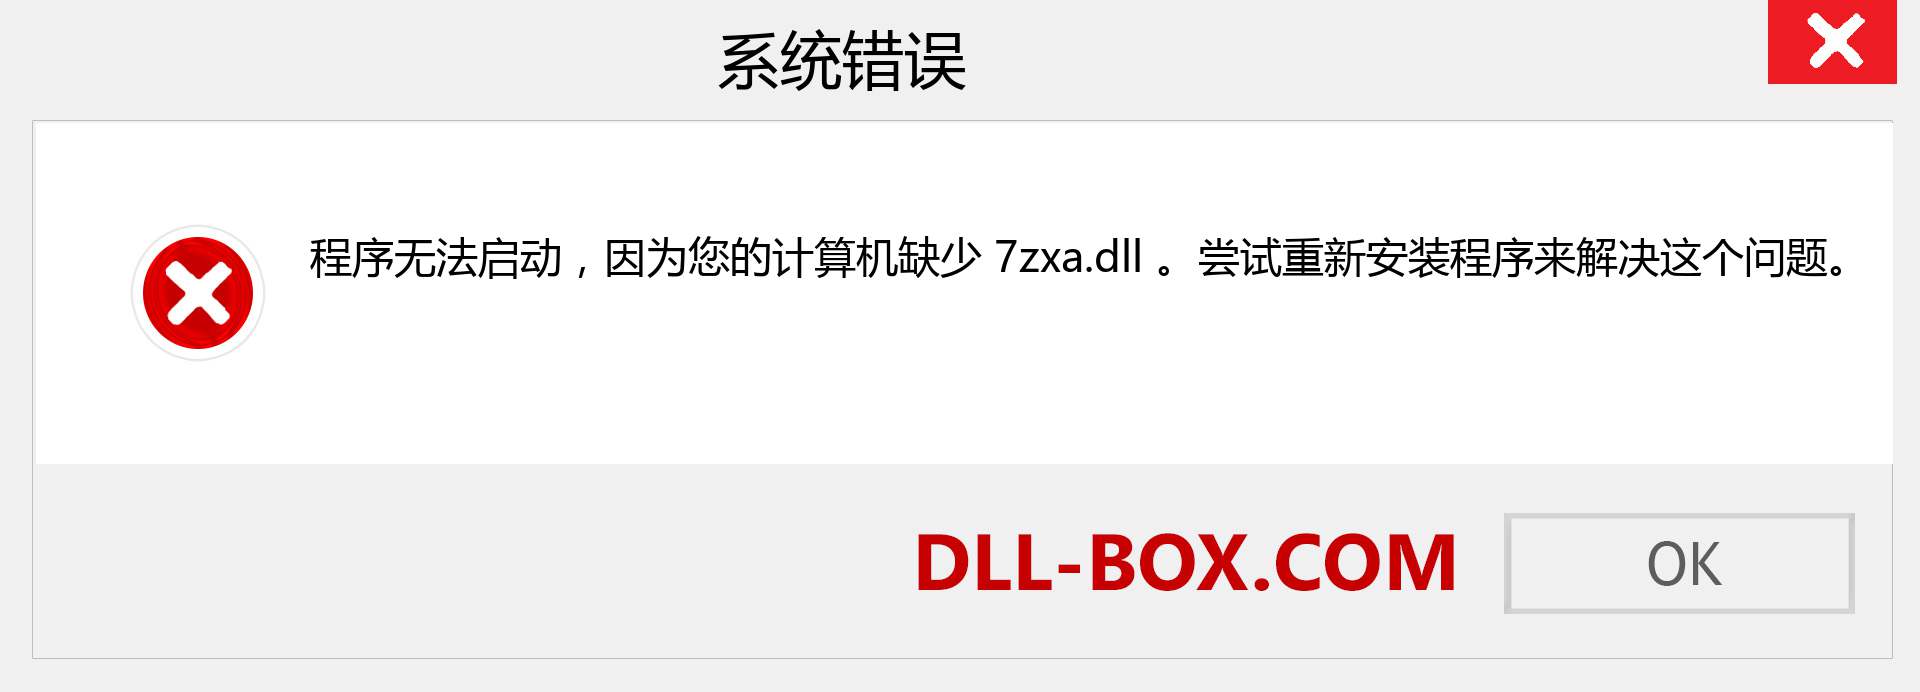 7zxa.dll 文件丢失？。 适用于 Windows 7、8、10 的下载 - 修复 Windows、照片、图像上的 7zxa dll 丢失错误